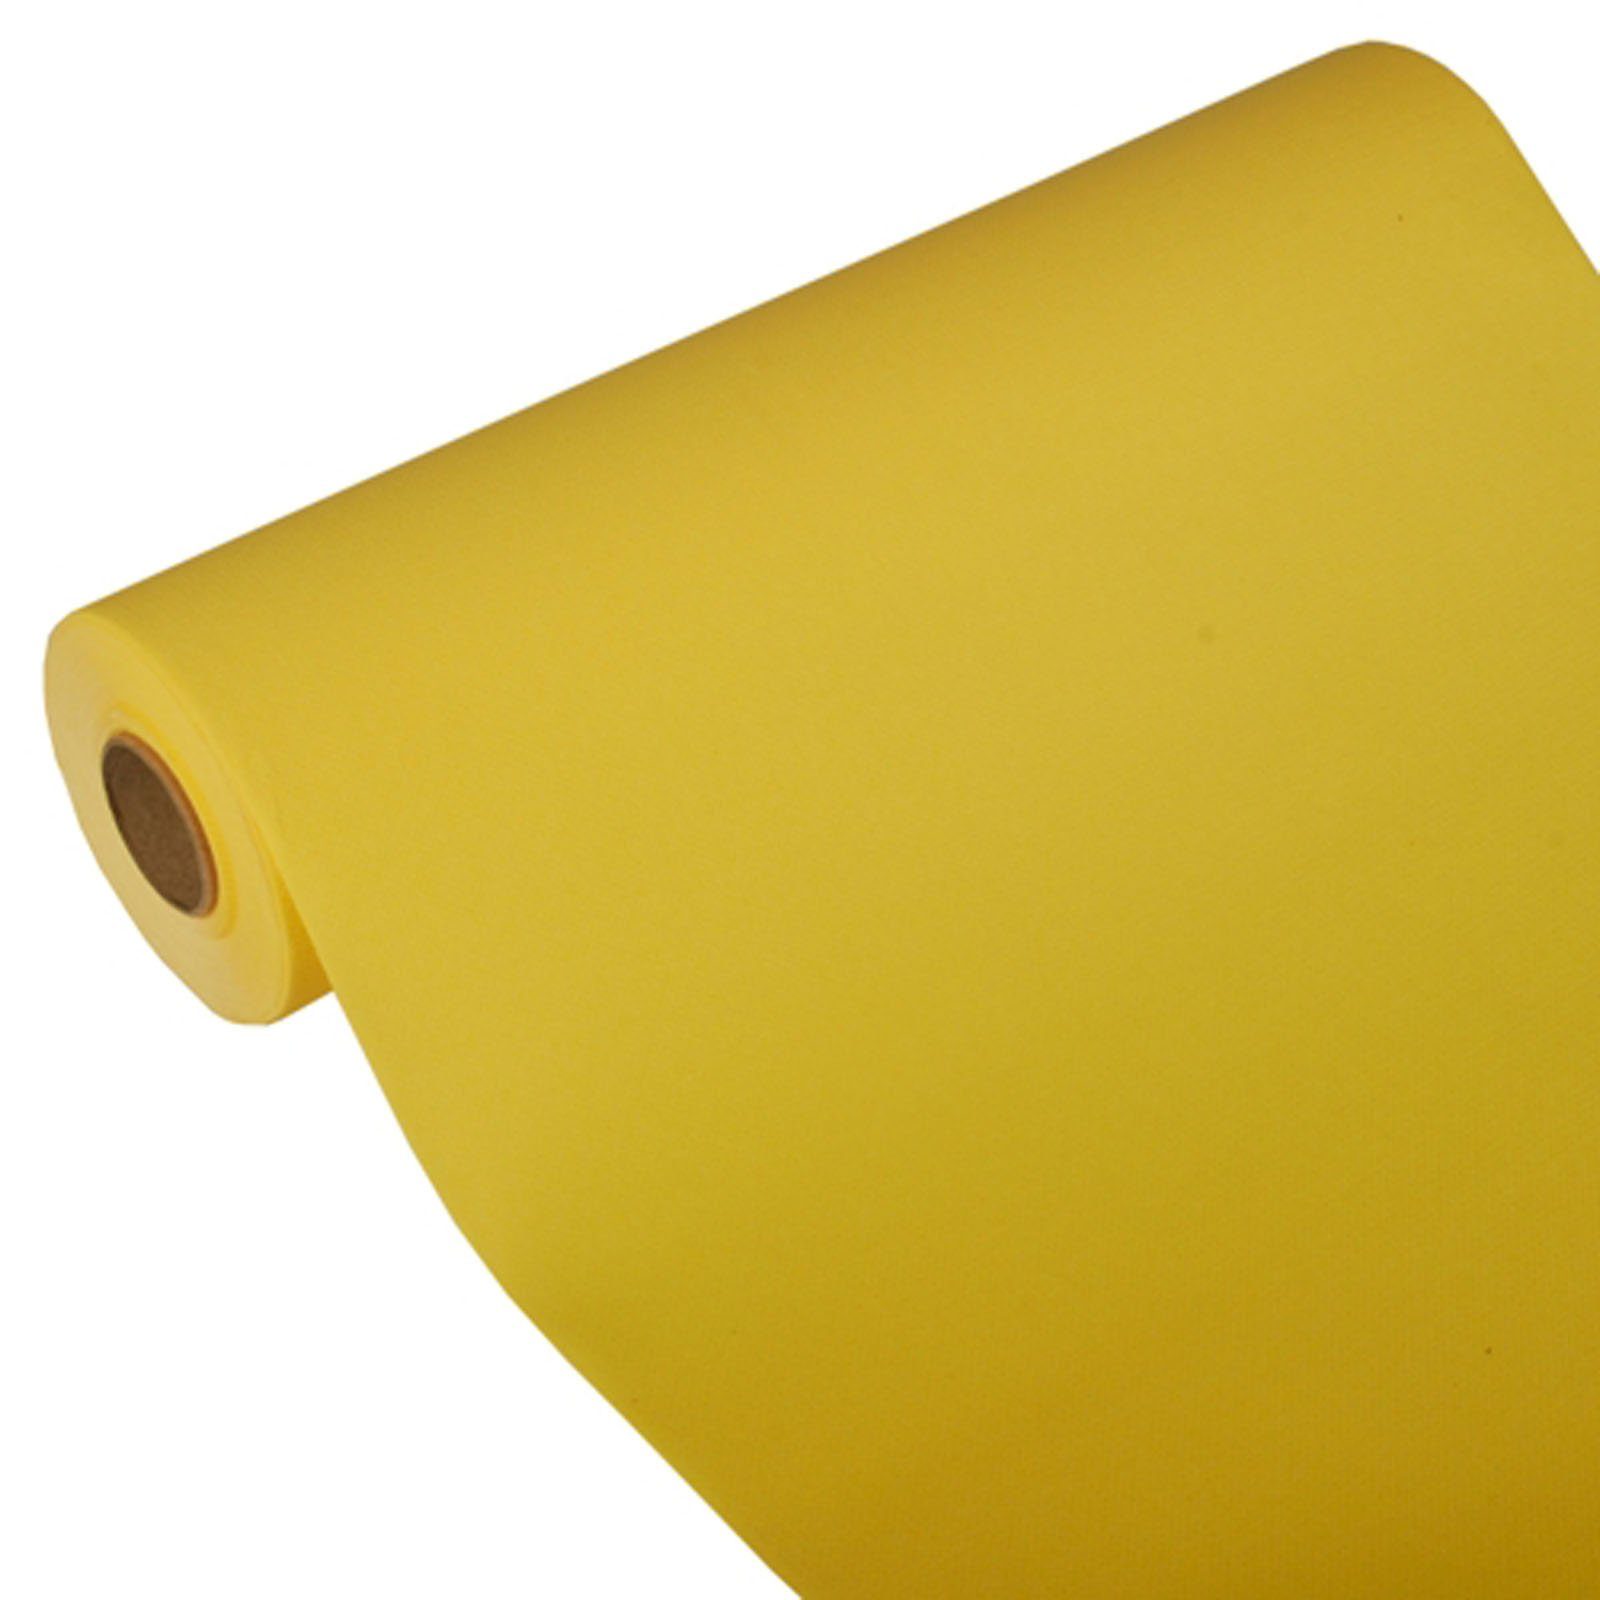 PAPSTAR Tischläufer 4 Stück Tissue Tischläufer, gelb ROYAL Collection 24 m x 40 cm